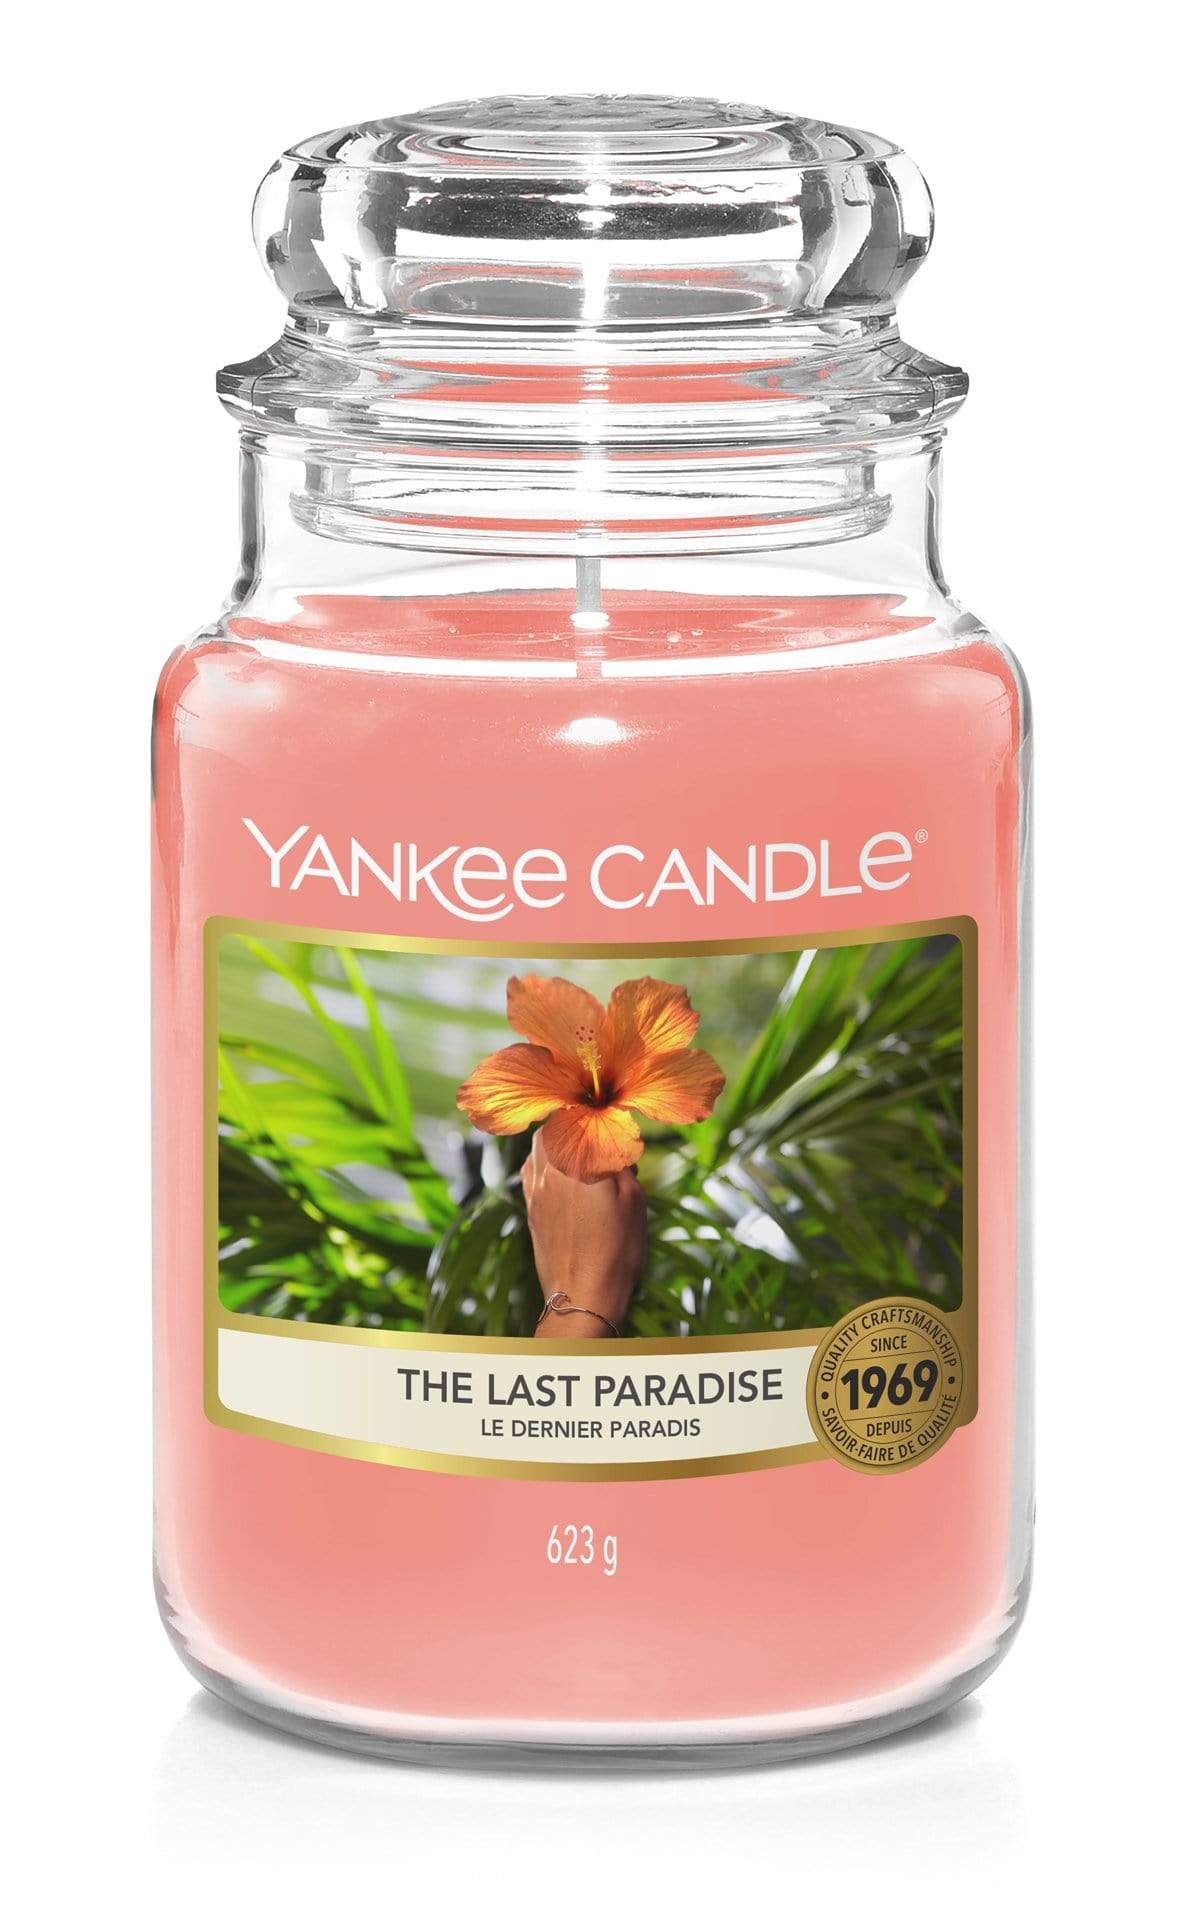 Yankee Candle Large Jar Candle Yankee Candle Large Jar - The Last Paradise